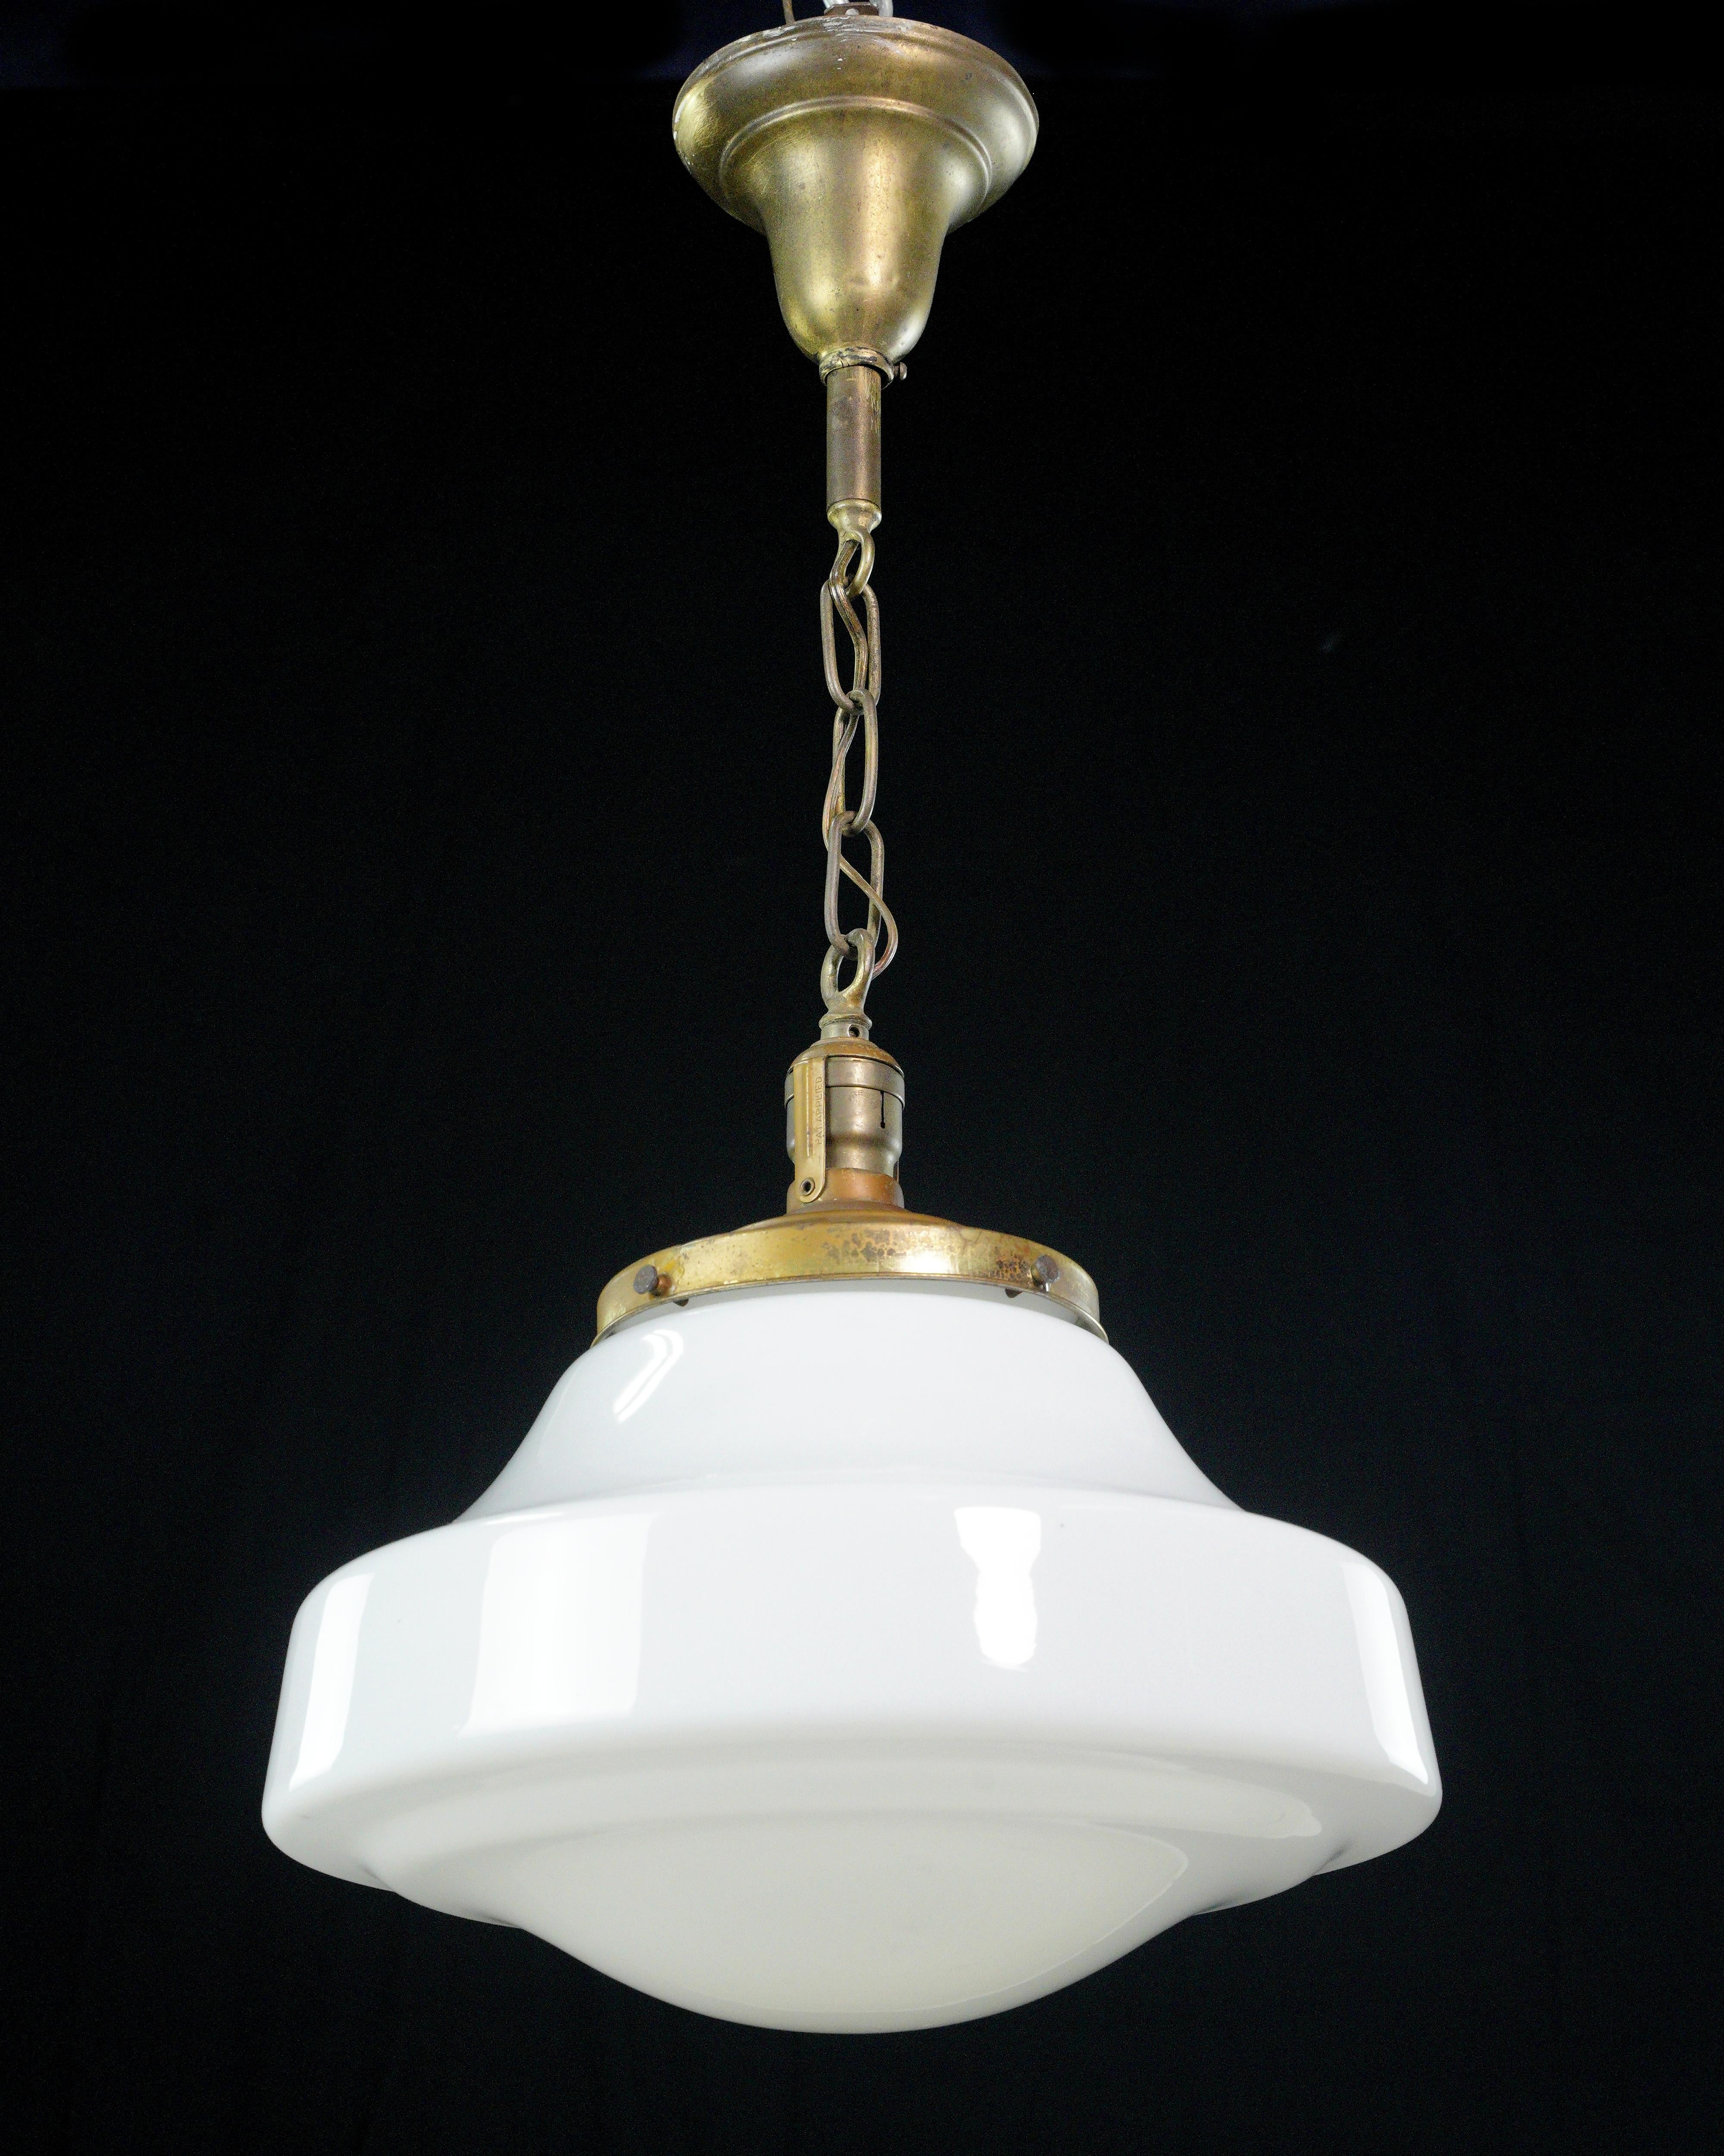 Cette lampe suspendue antique est un superbe luminaire doté d'un globe en verre au lait blanc inspiré des écoles et d'une élégante chaîne en acier au fini laiton. Il allie une beauté intemporelle à une touche de sophistication. Il est équipé d'une